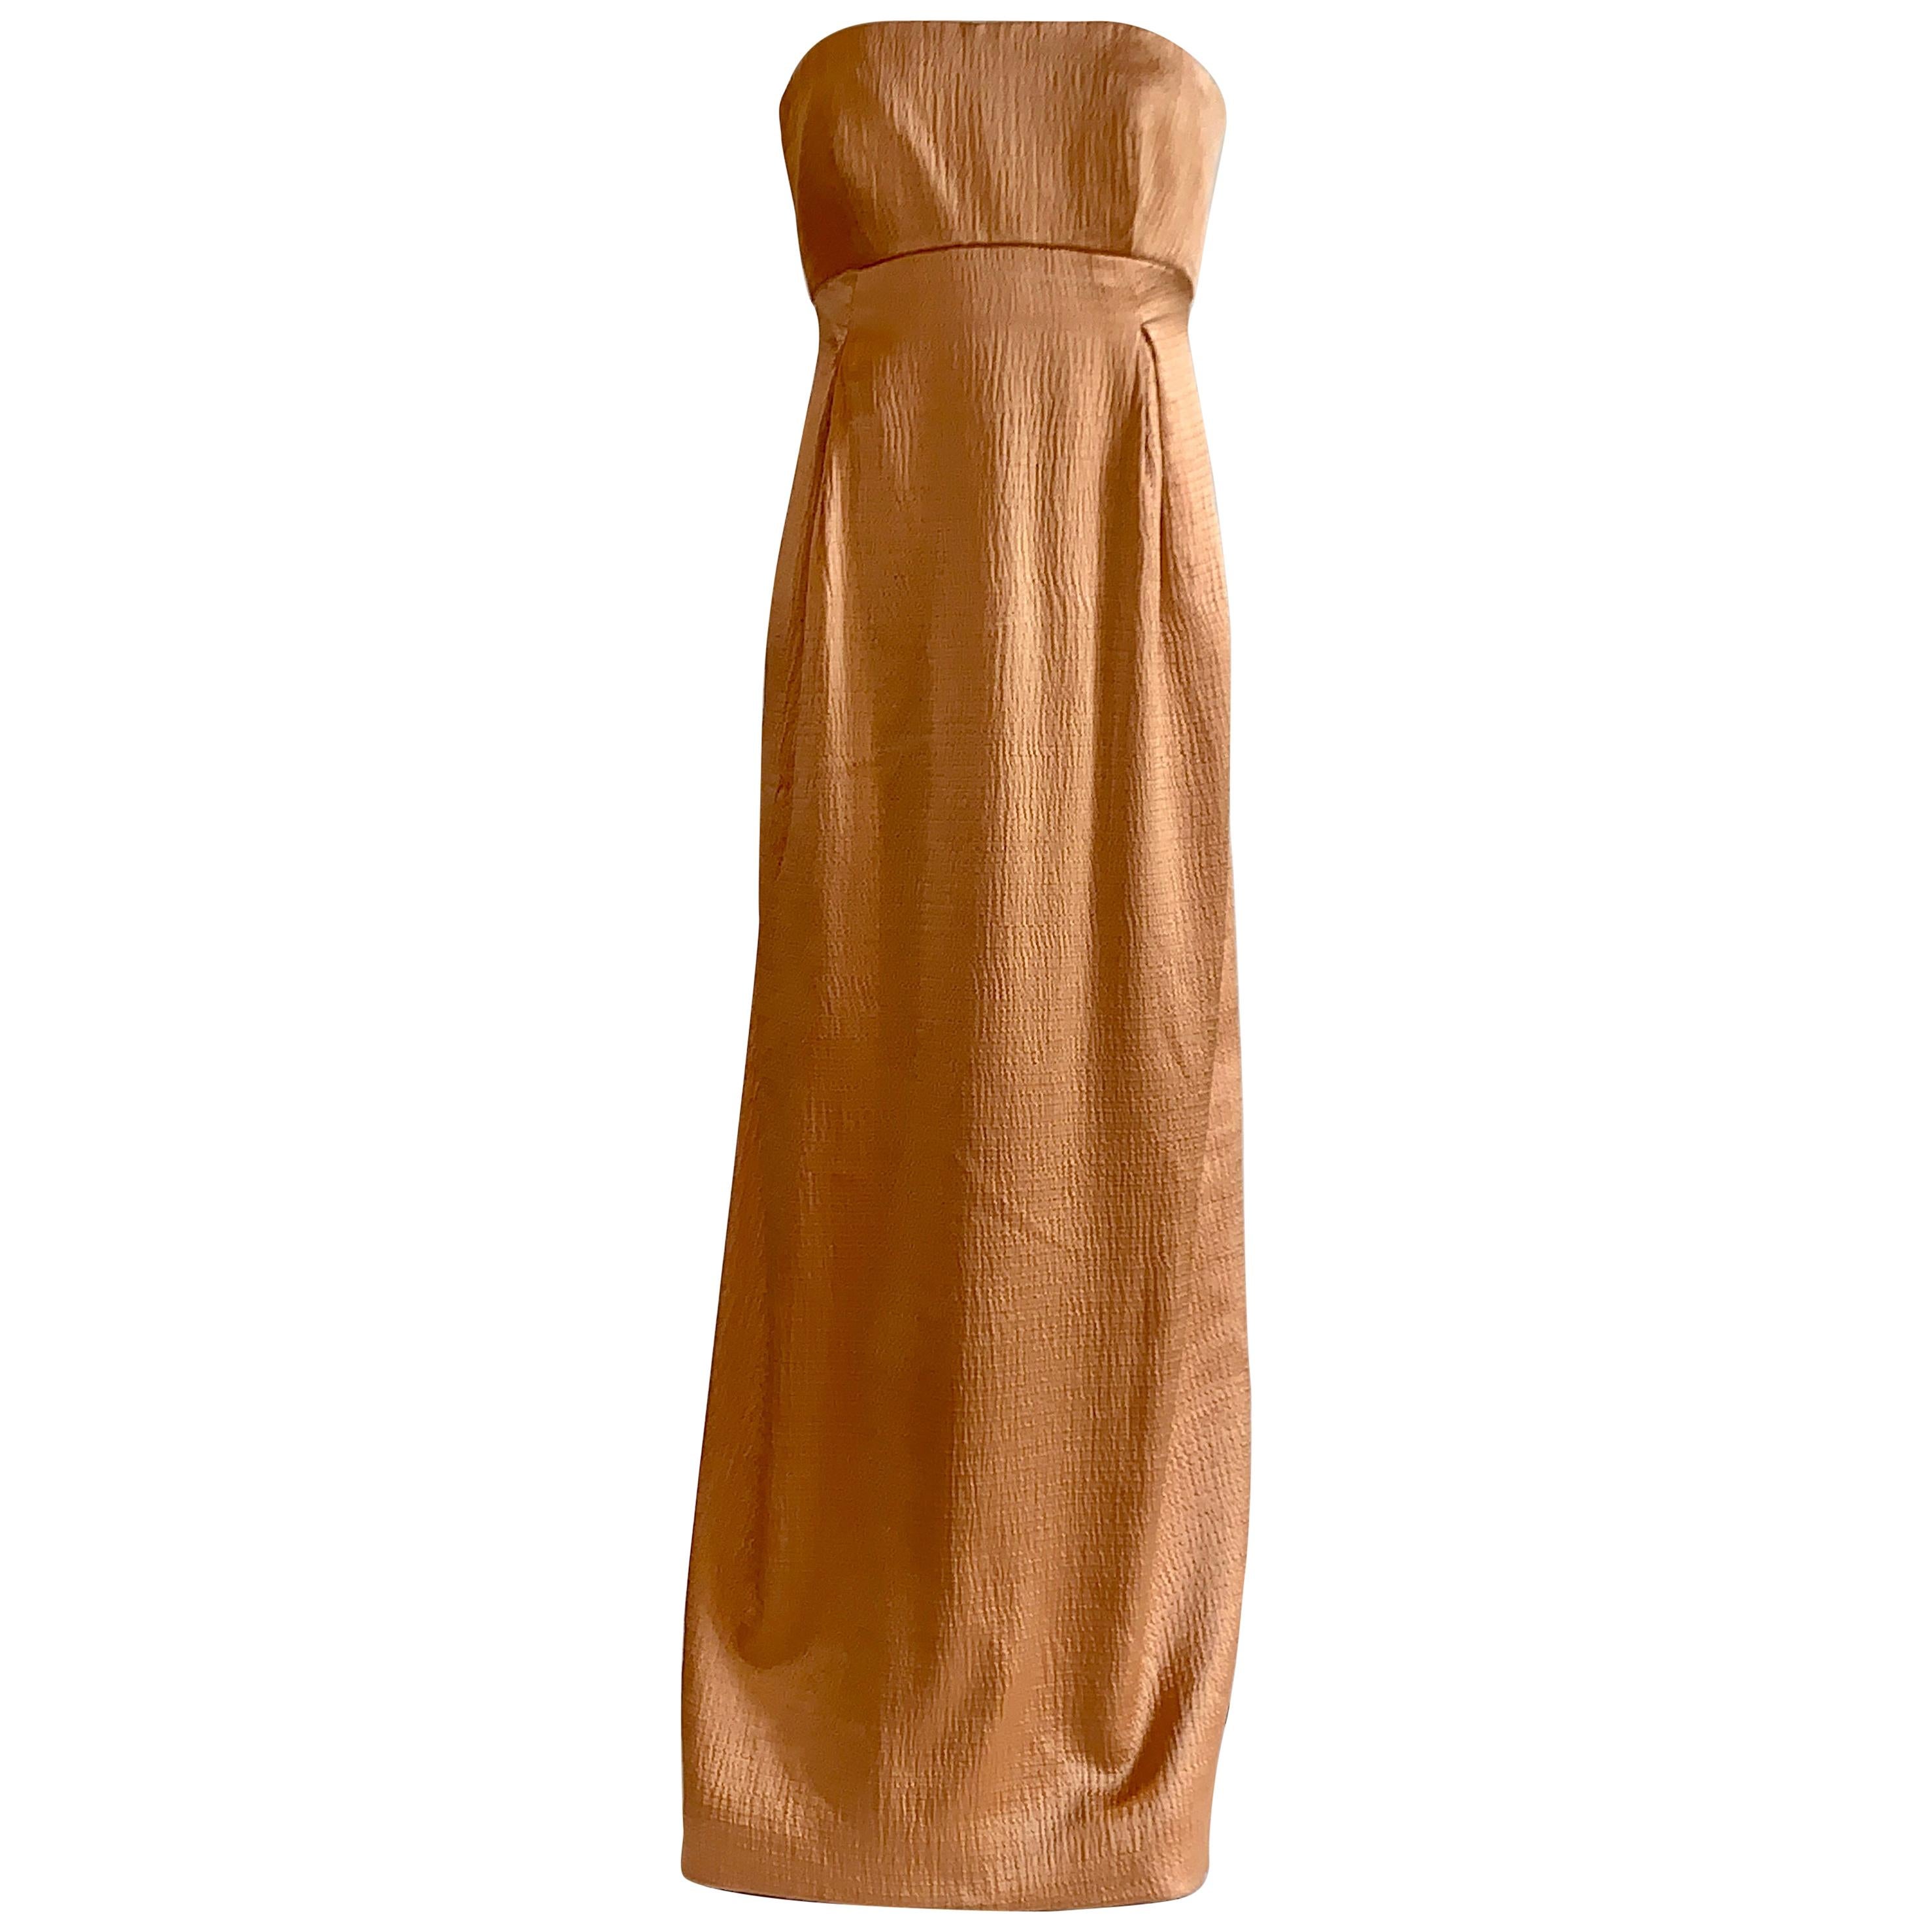 Geoffrey Beene 1990s Textured Silk Apricot Beige Strapless Evening Gown